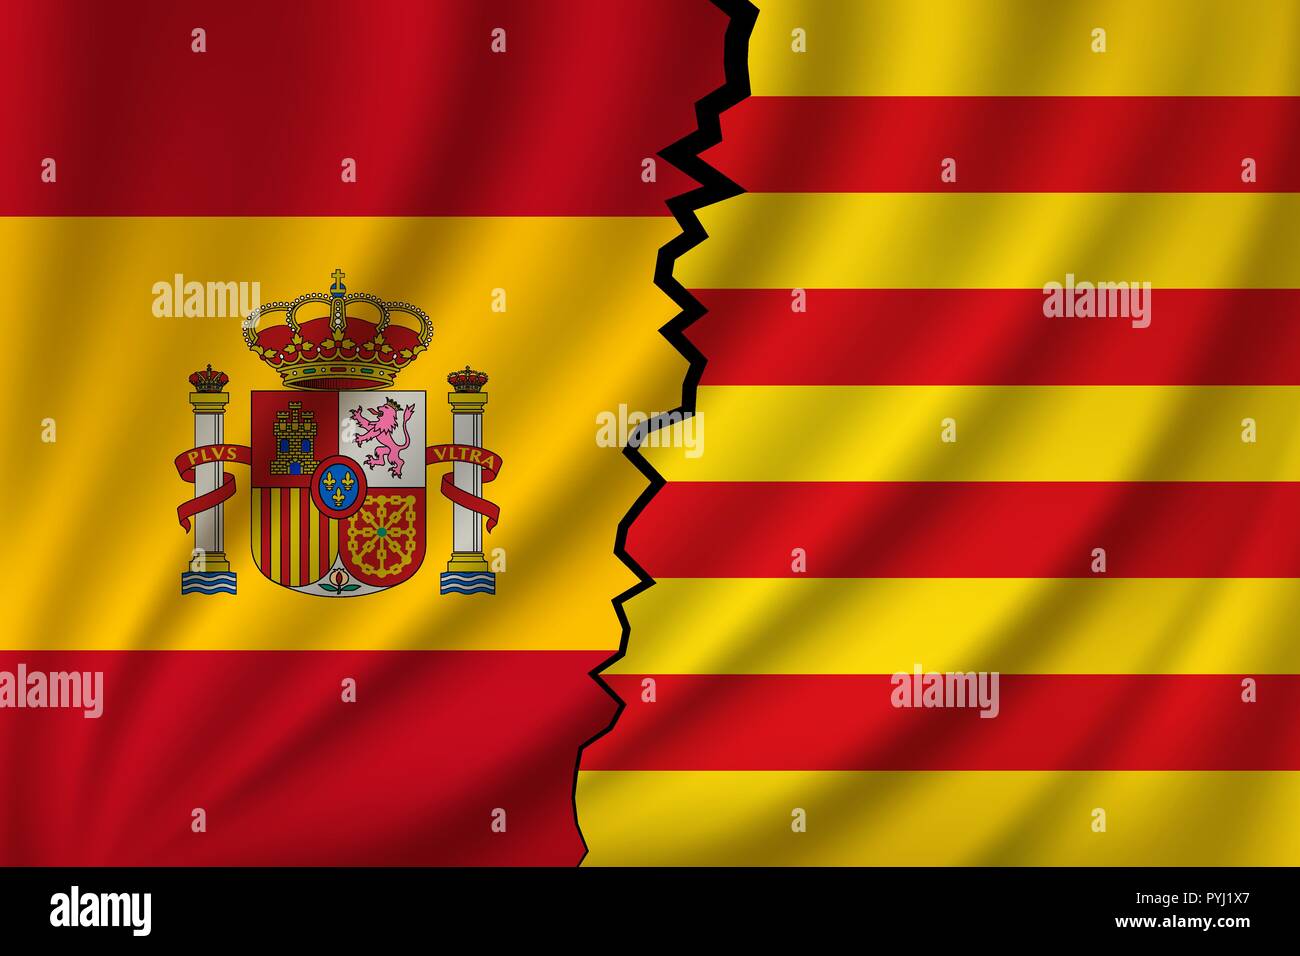 Katalonien vs Spanien - Unabhängigkeit und Souveränität der katalanischen Nation. Stock Vektor